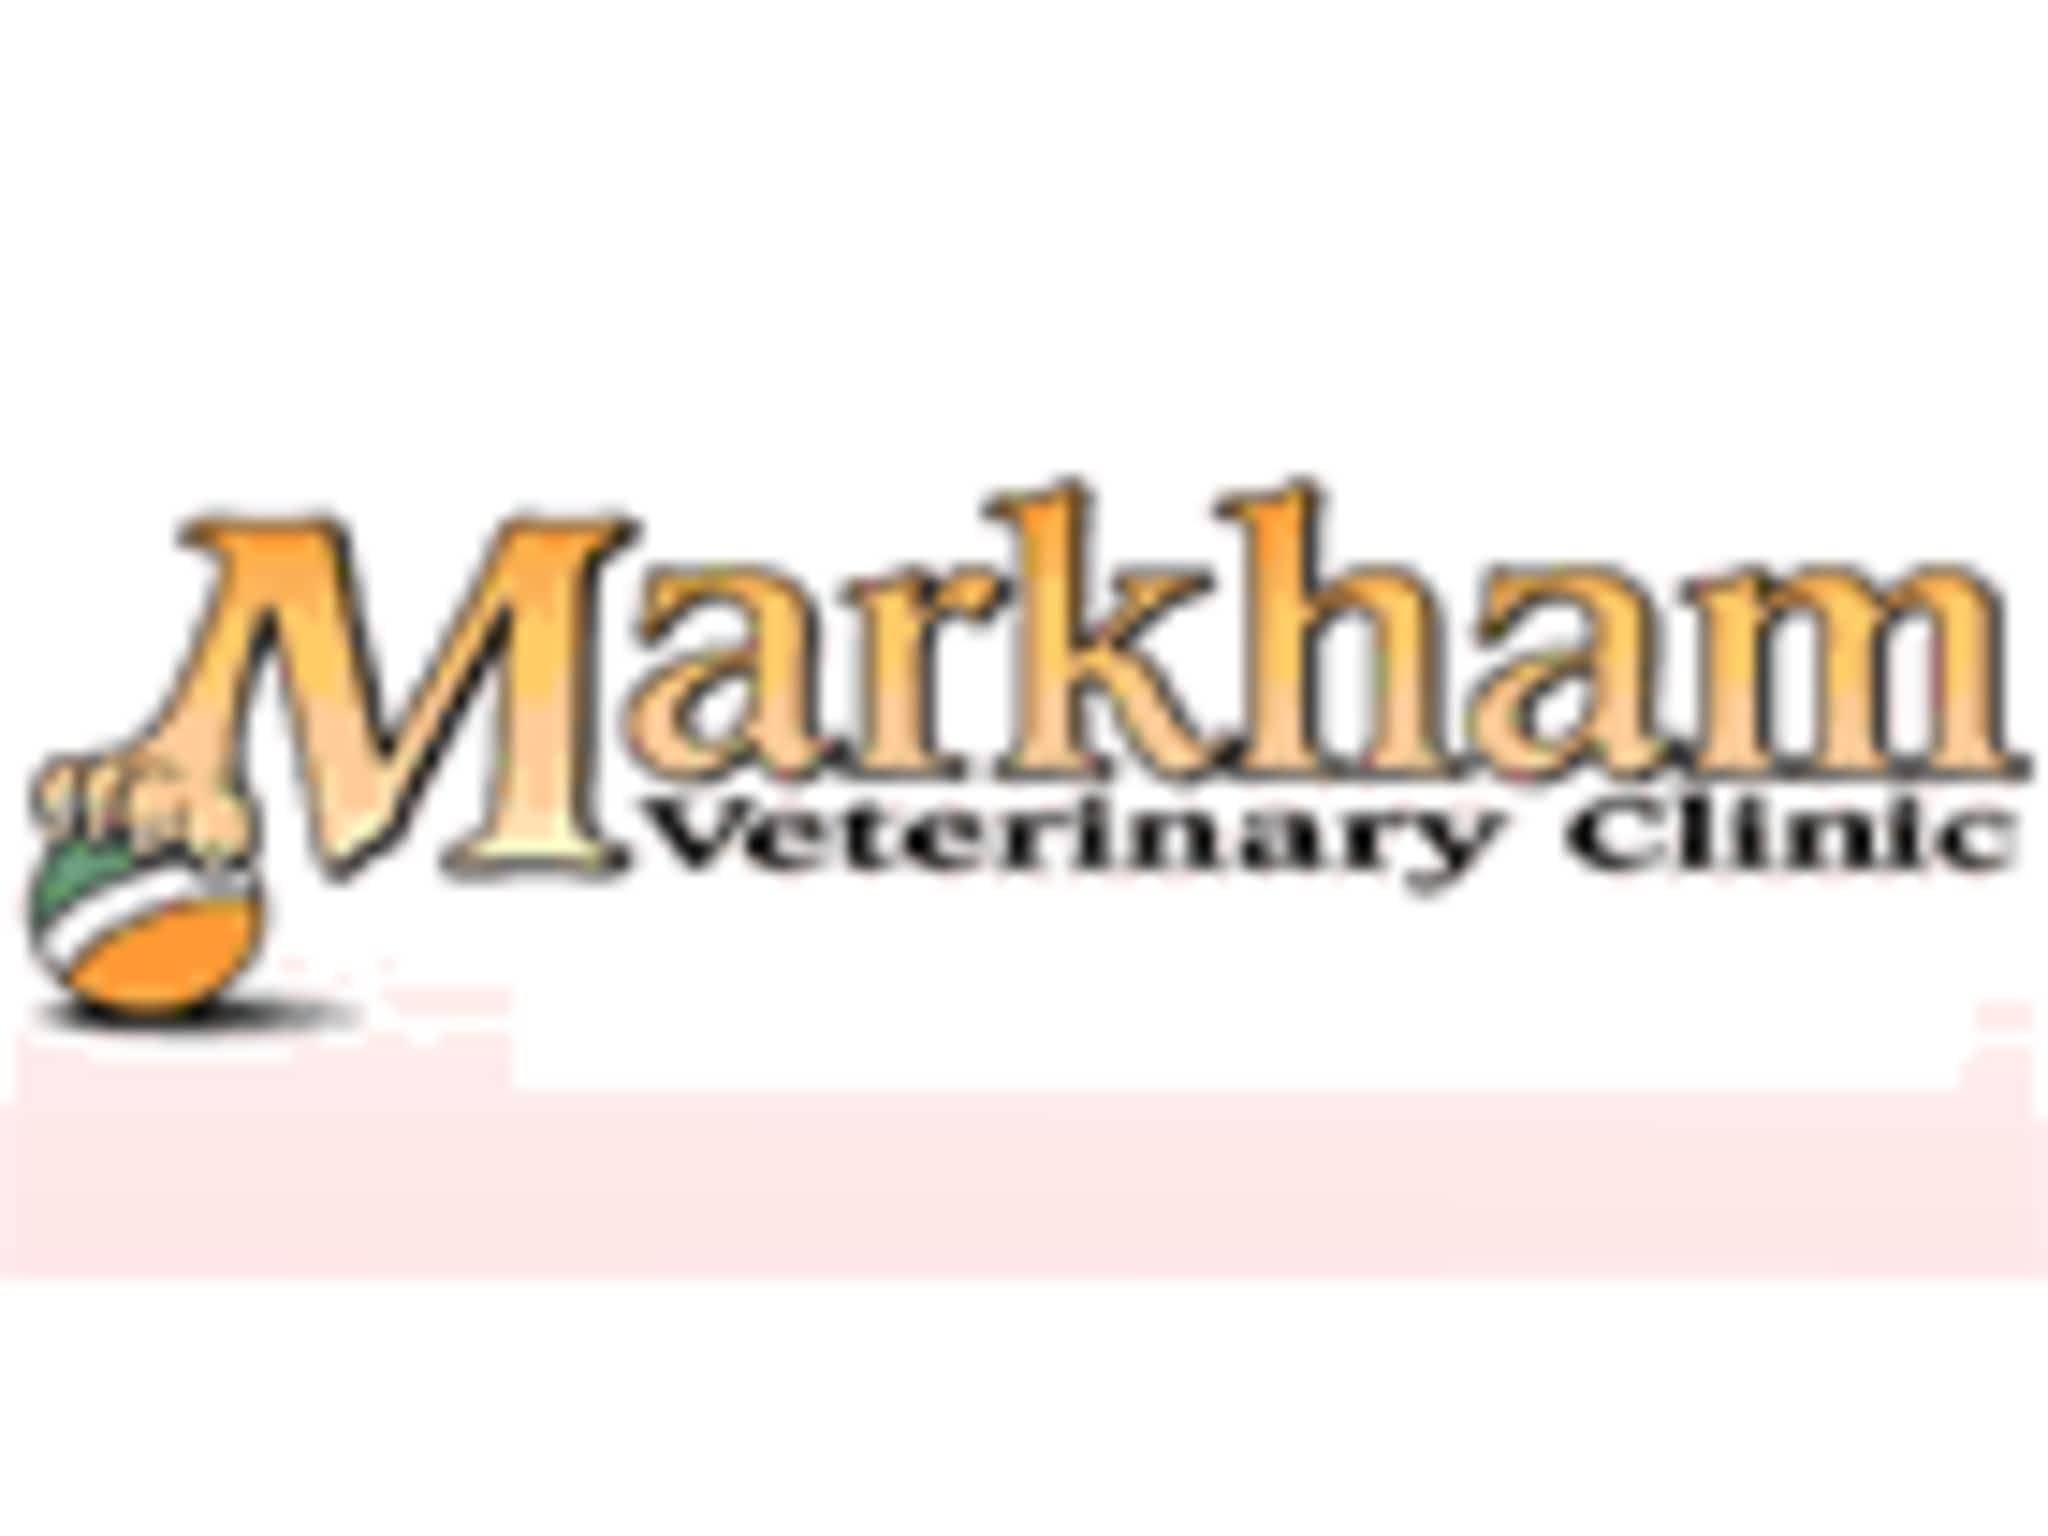 photo Markham Veterinary Clinic